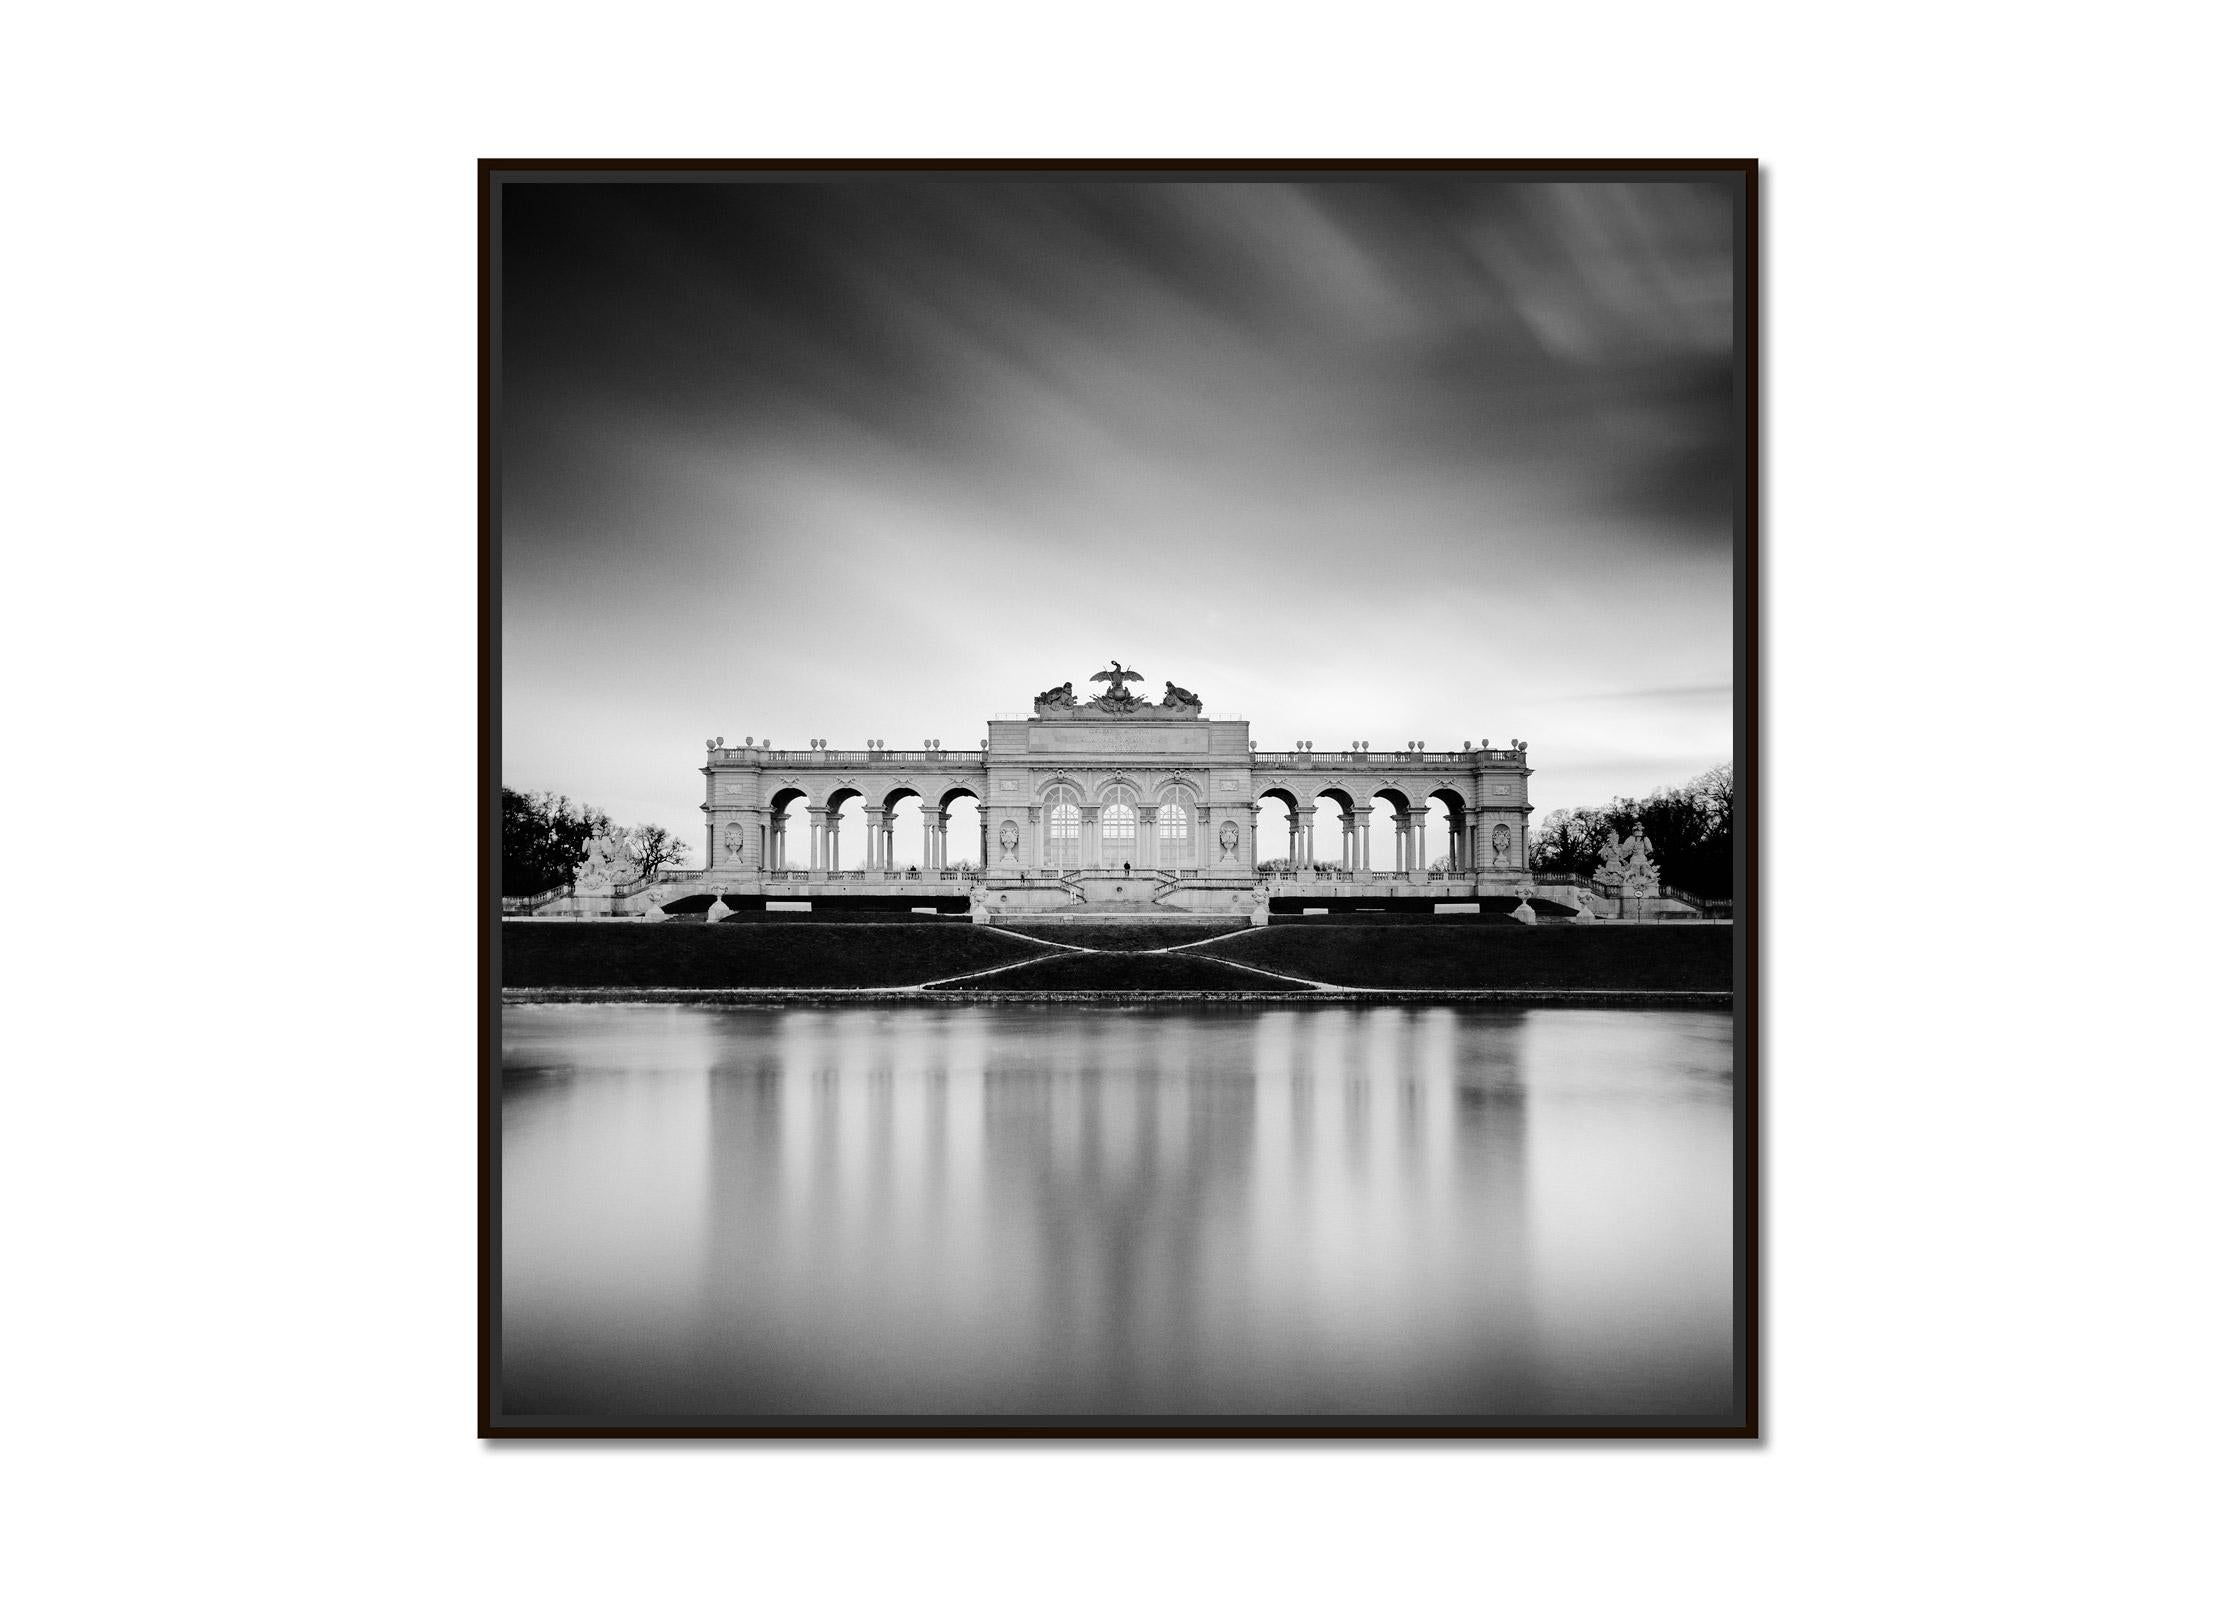 Gloriette, Schloss Schoenbrunn, Vienna, black and white photography, landscape - Photograph by Gerald Berghammer